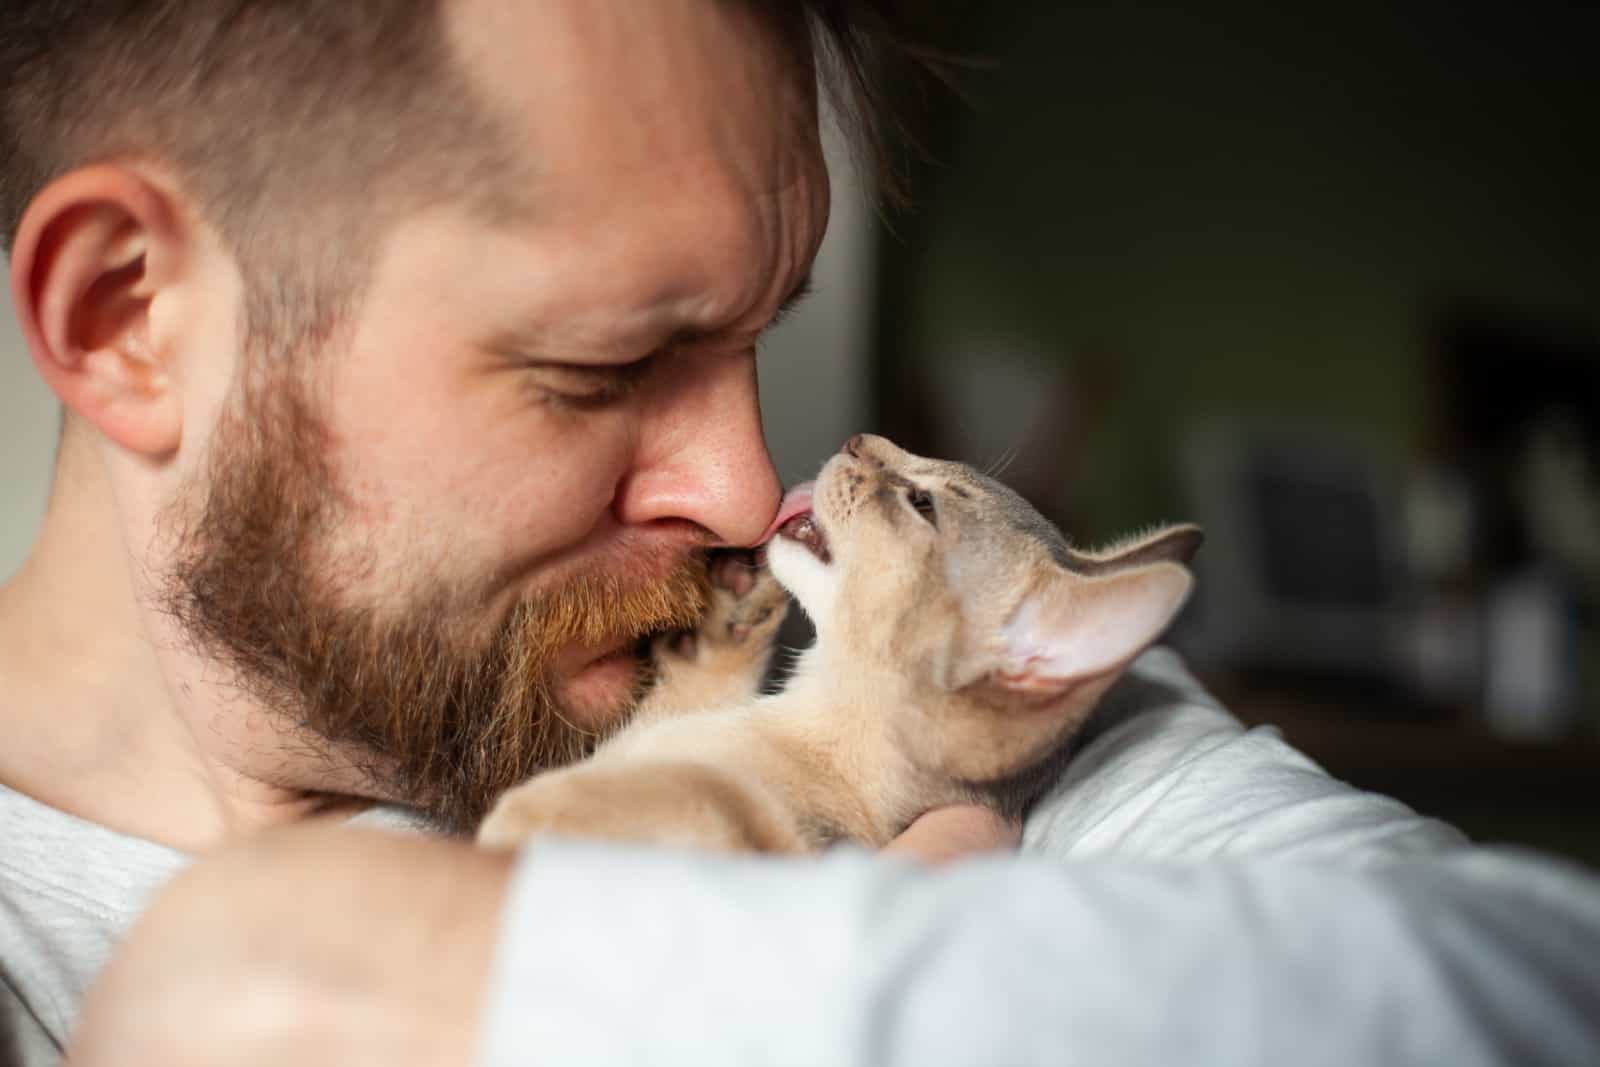 cat licks man's nose